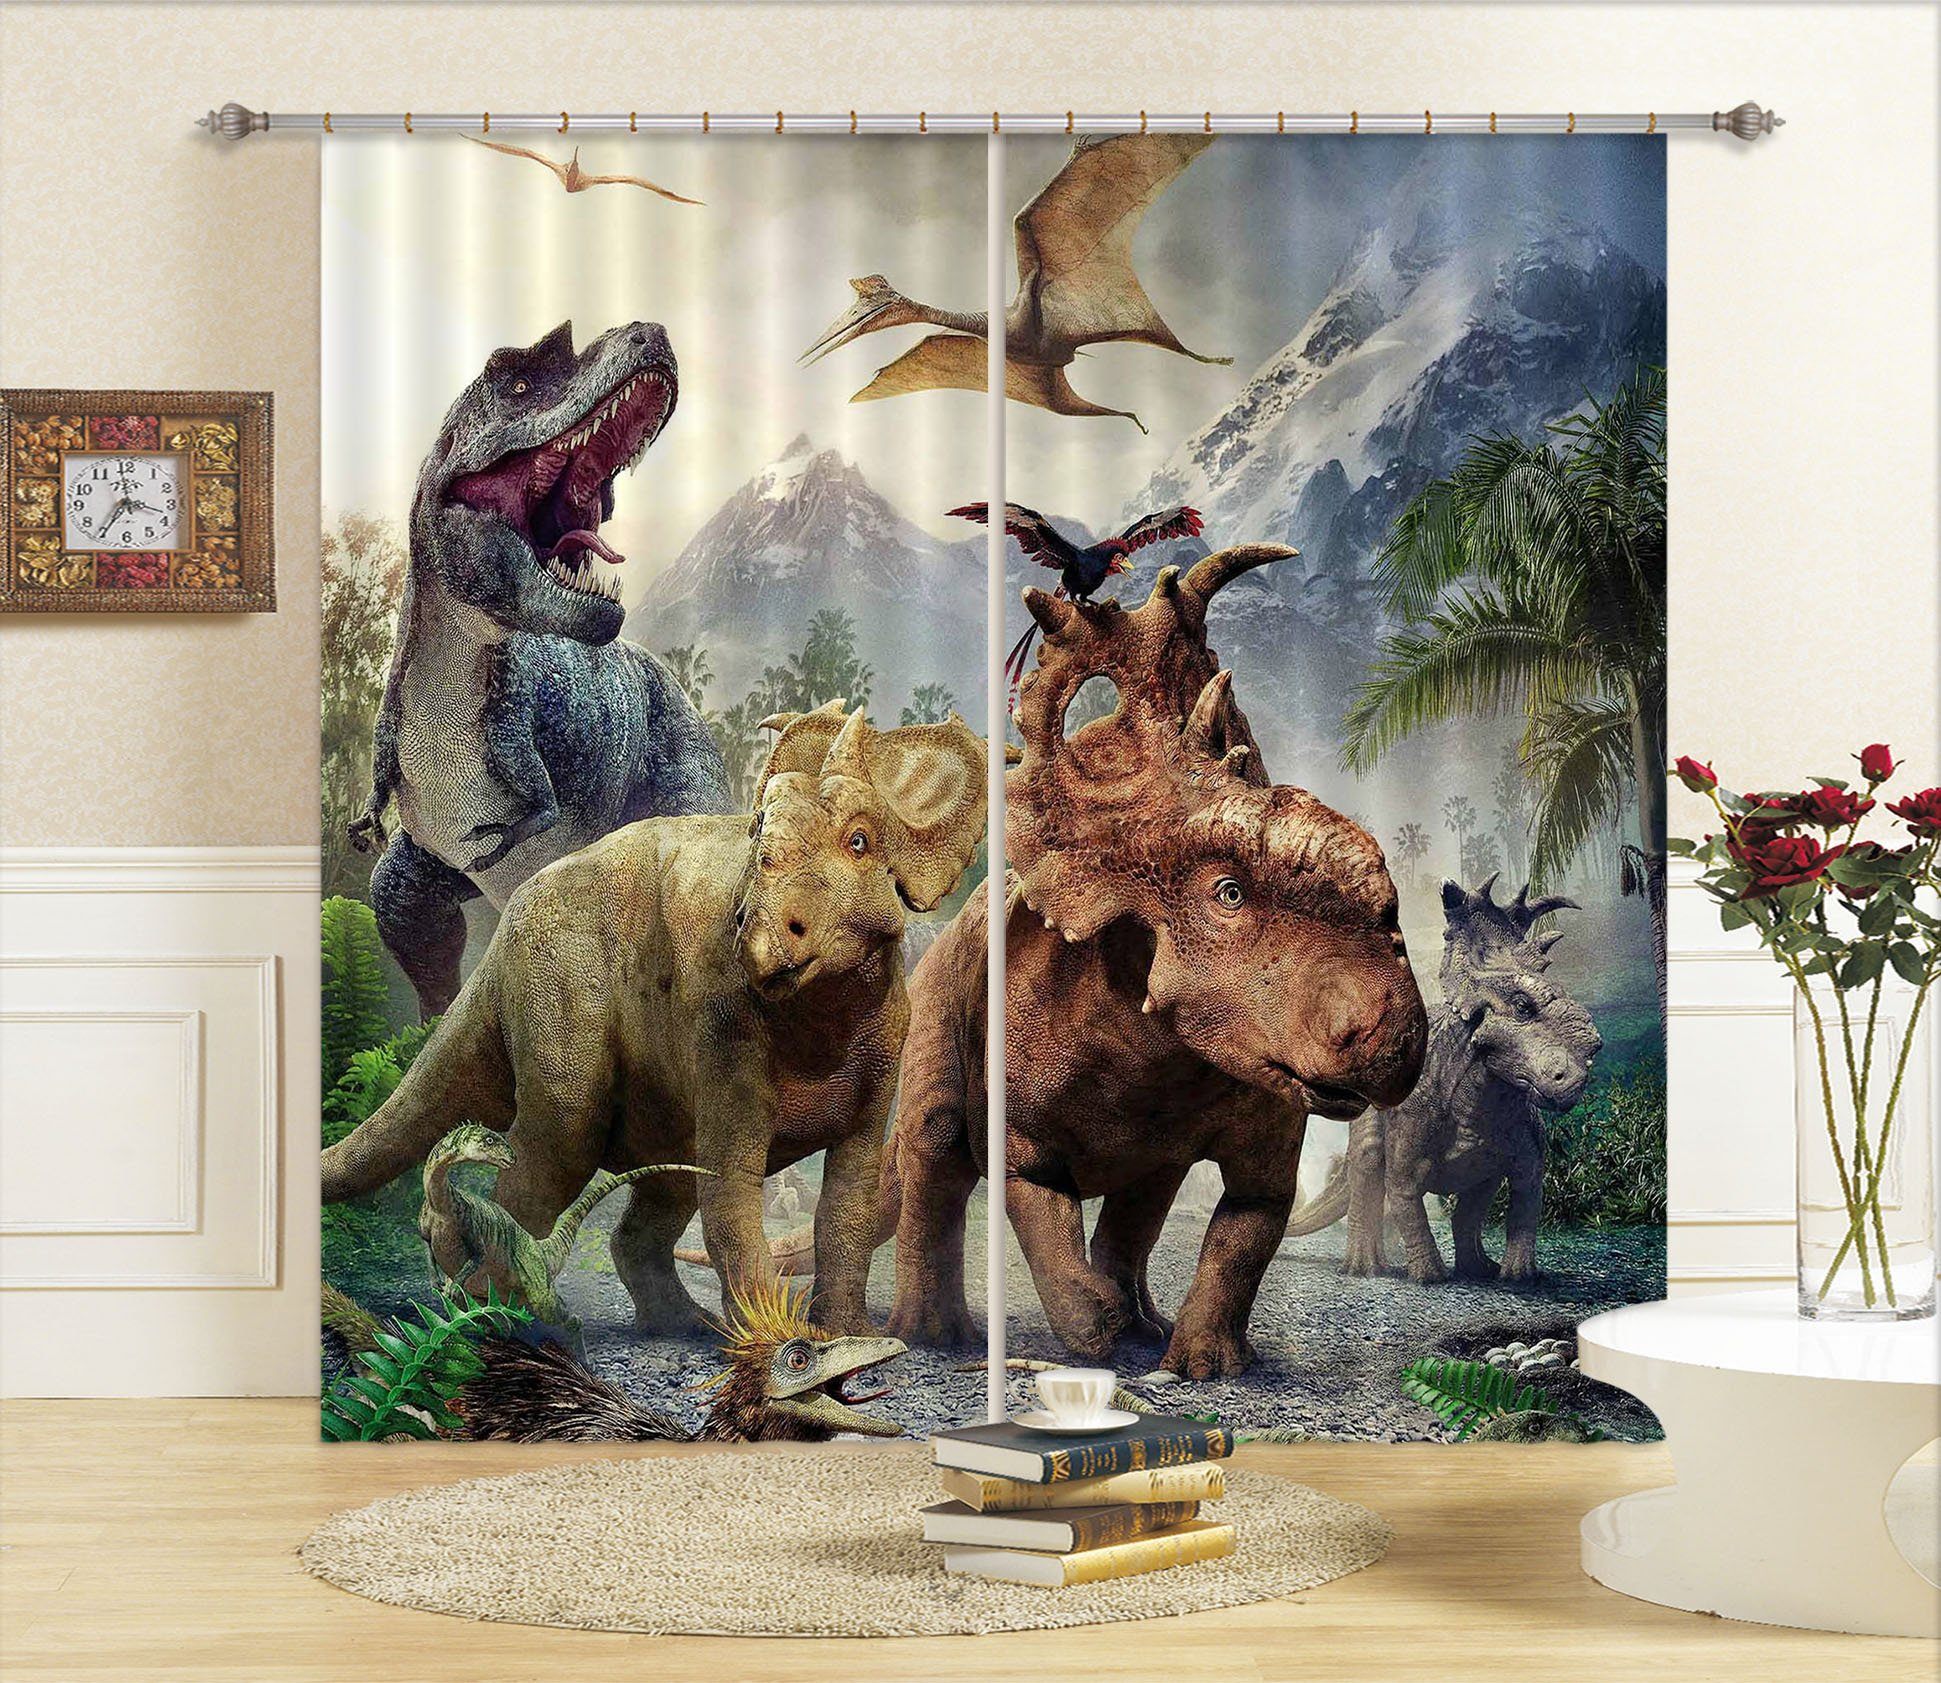 3D Short-Legged Dragon 138 Curtains Drapes Curtains AJ Creativity Home 